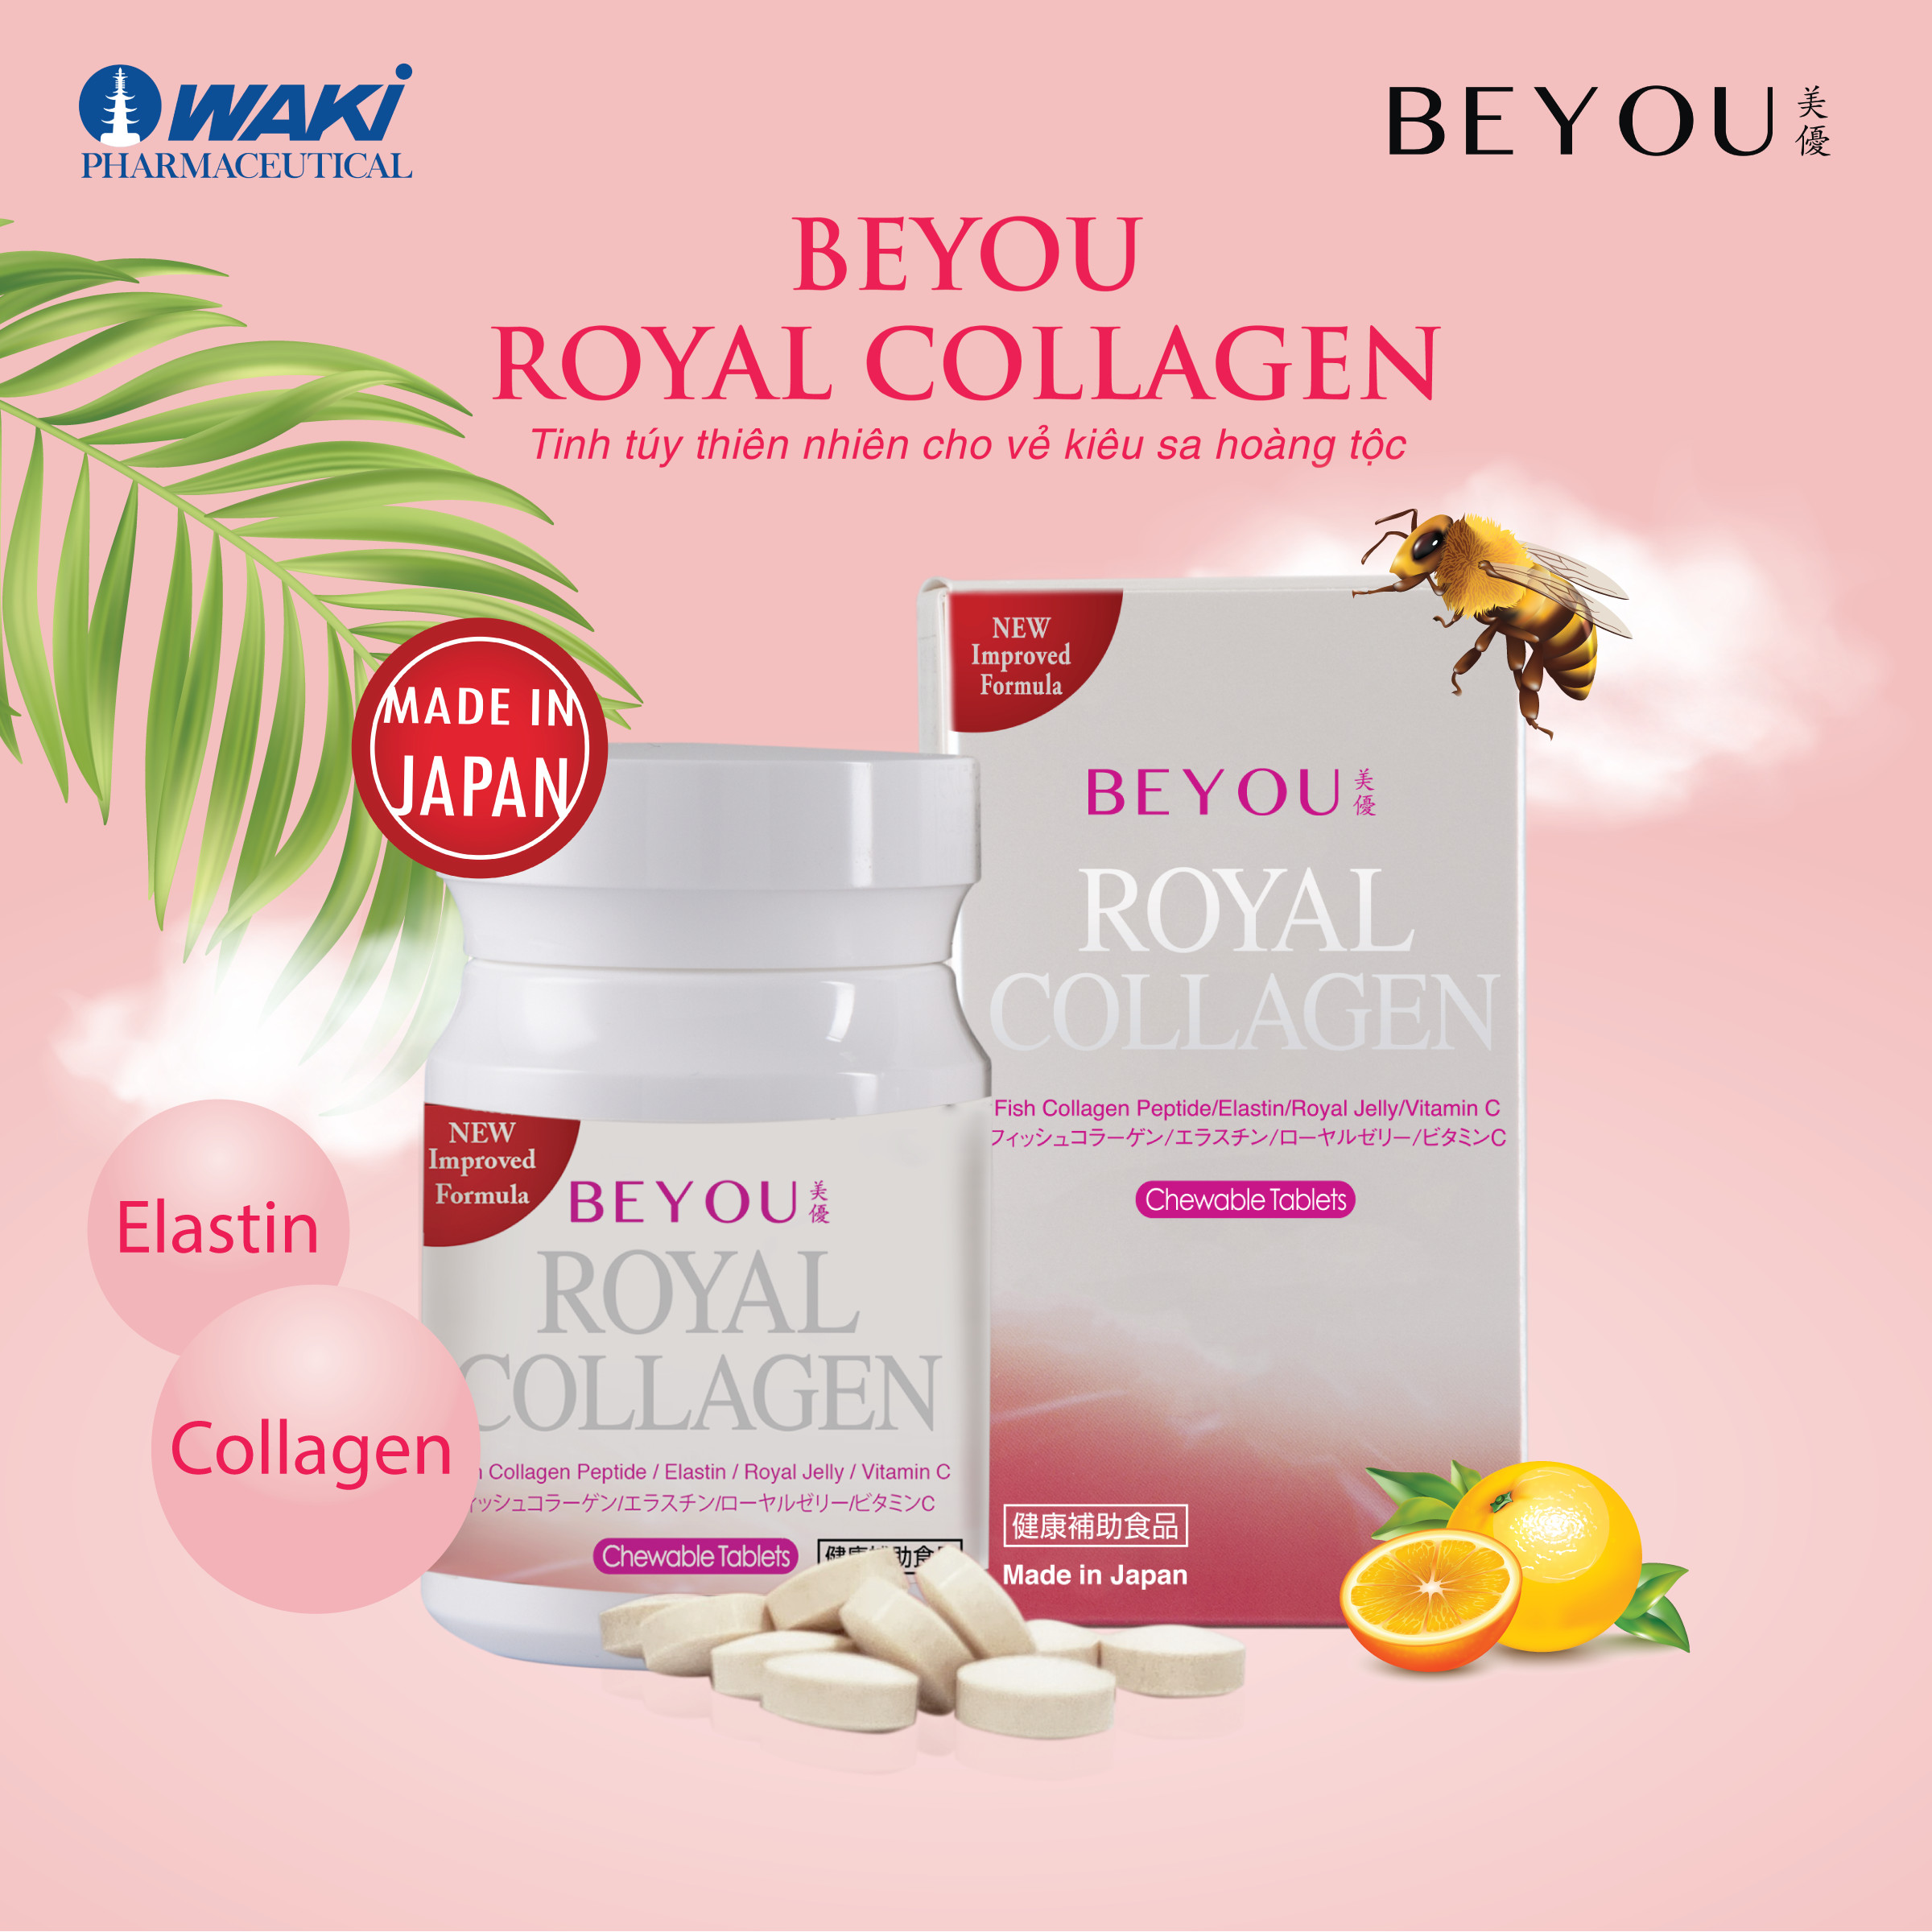 BEYOU Royal Collagen - Làm chậm quá trình lão hóa da, tăng độ đàn hồi cho da